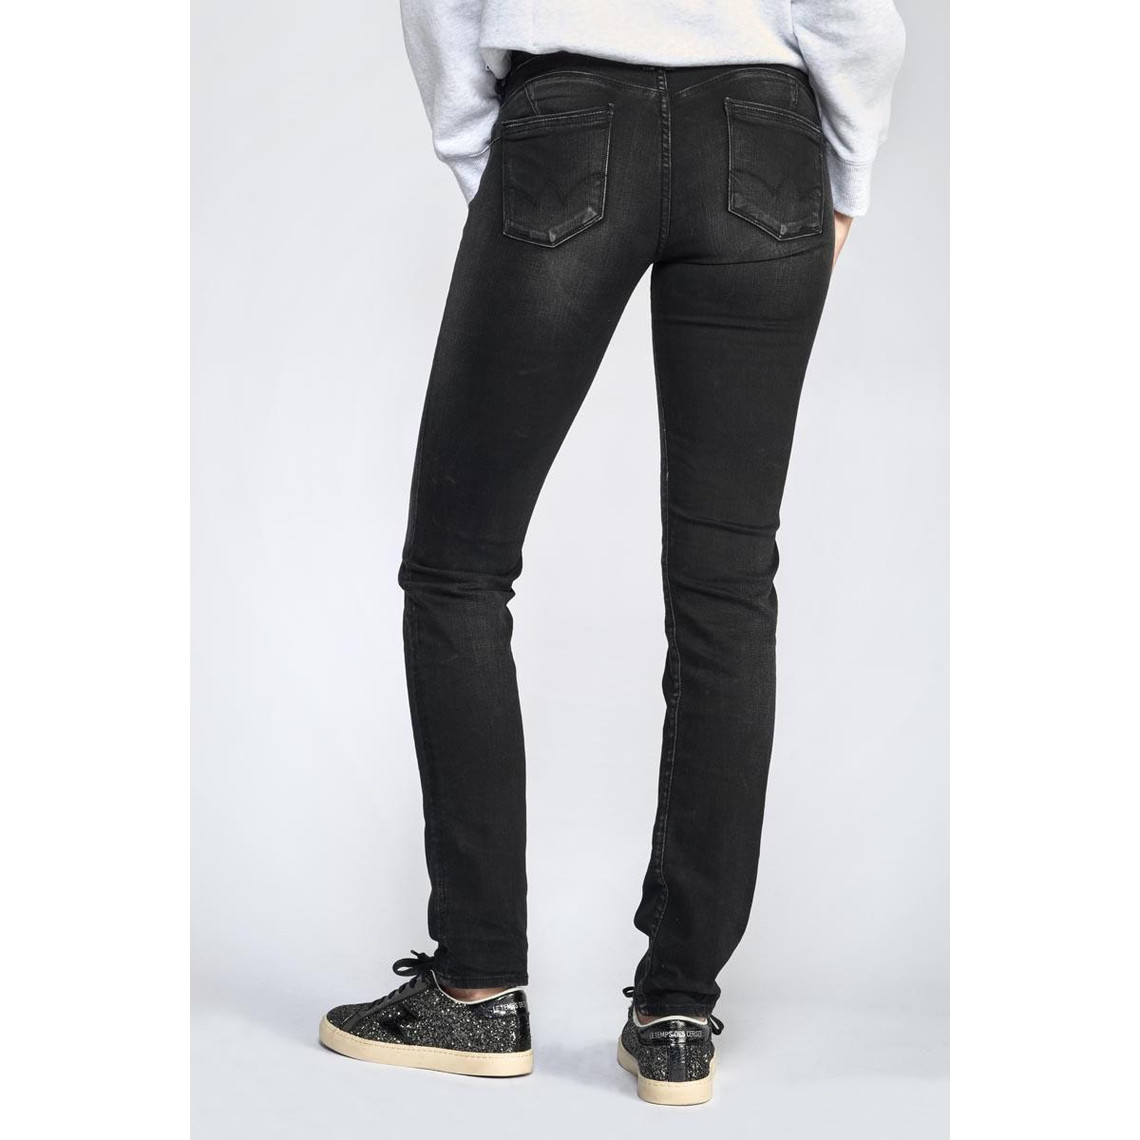 Jeans push-up regular, droit PULP, longueur 33 noir en coton